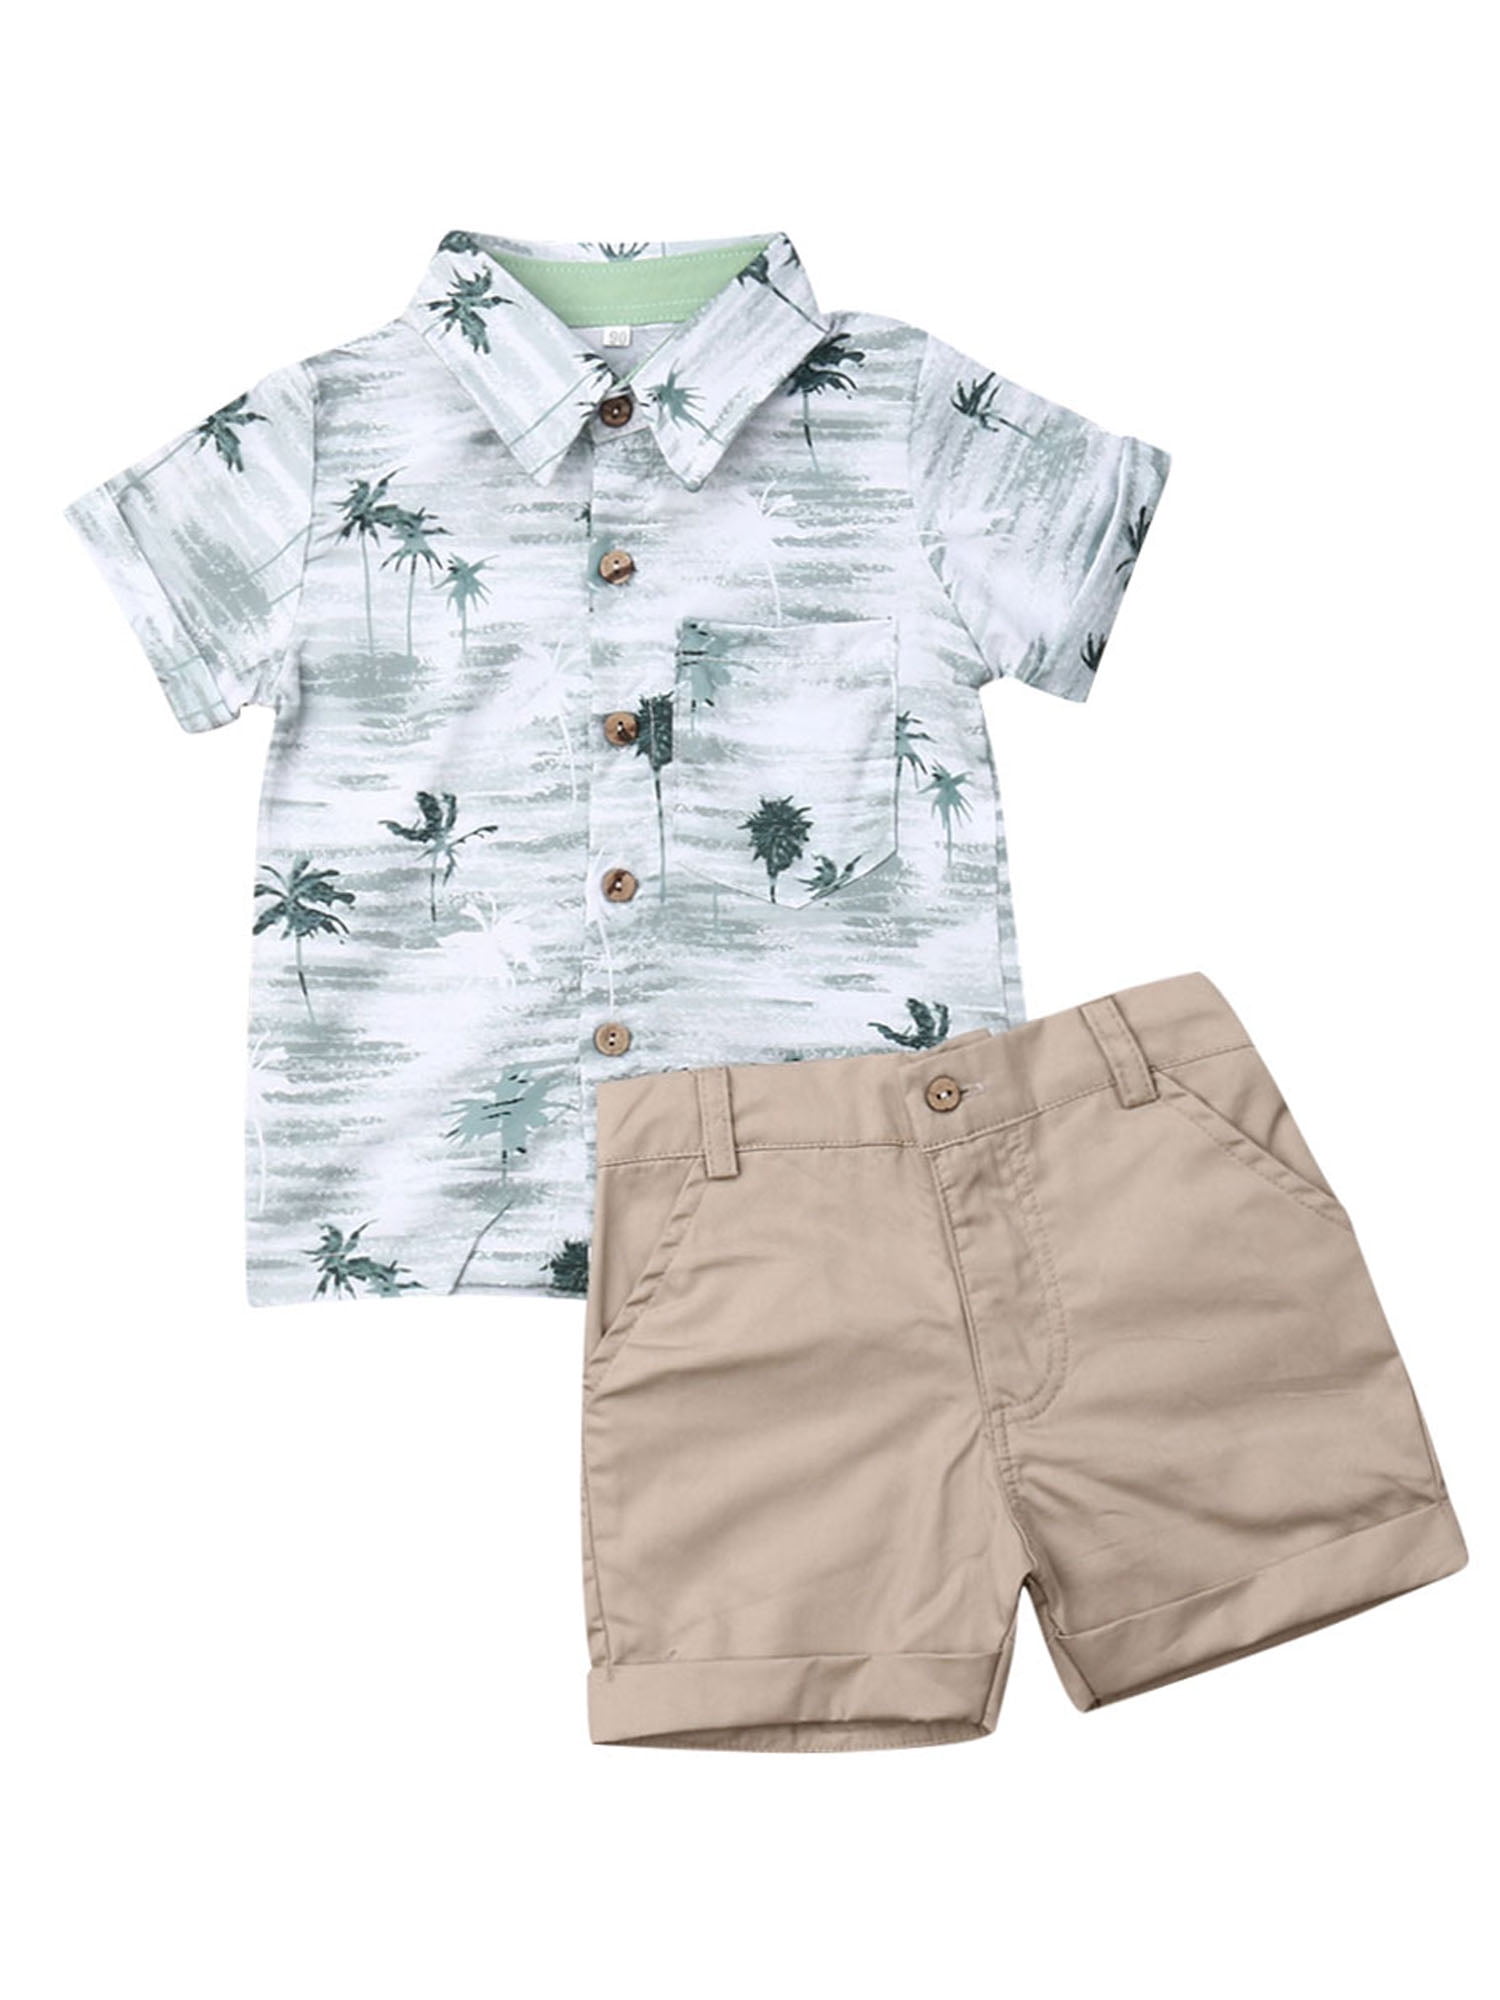 Car Cartoon Printed Kids Boys T-Shirt Tops Plaid Shorts Pants Summer Outfit Sets